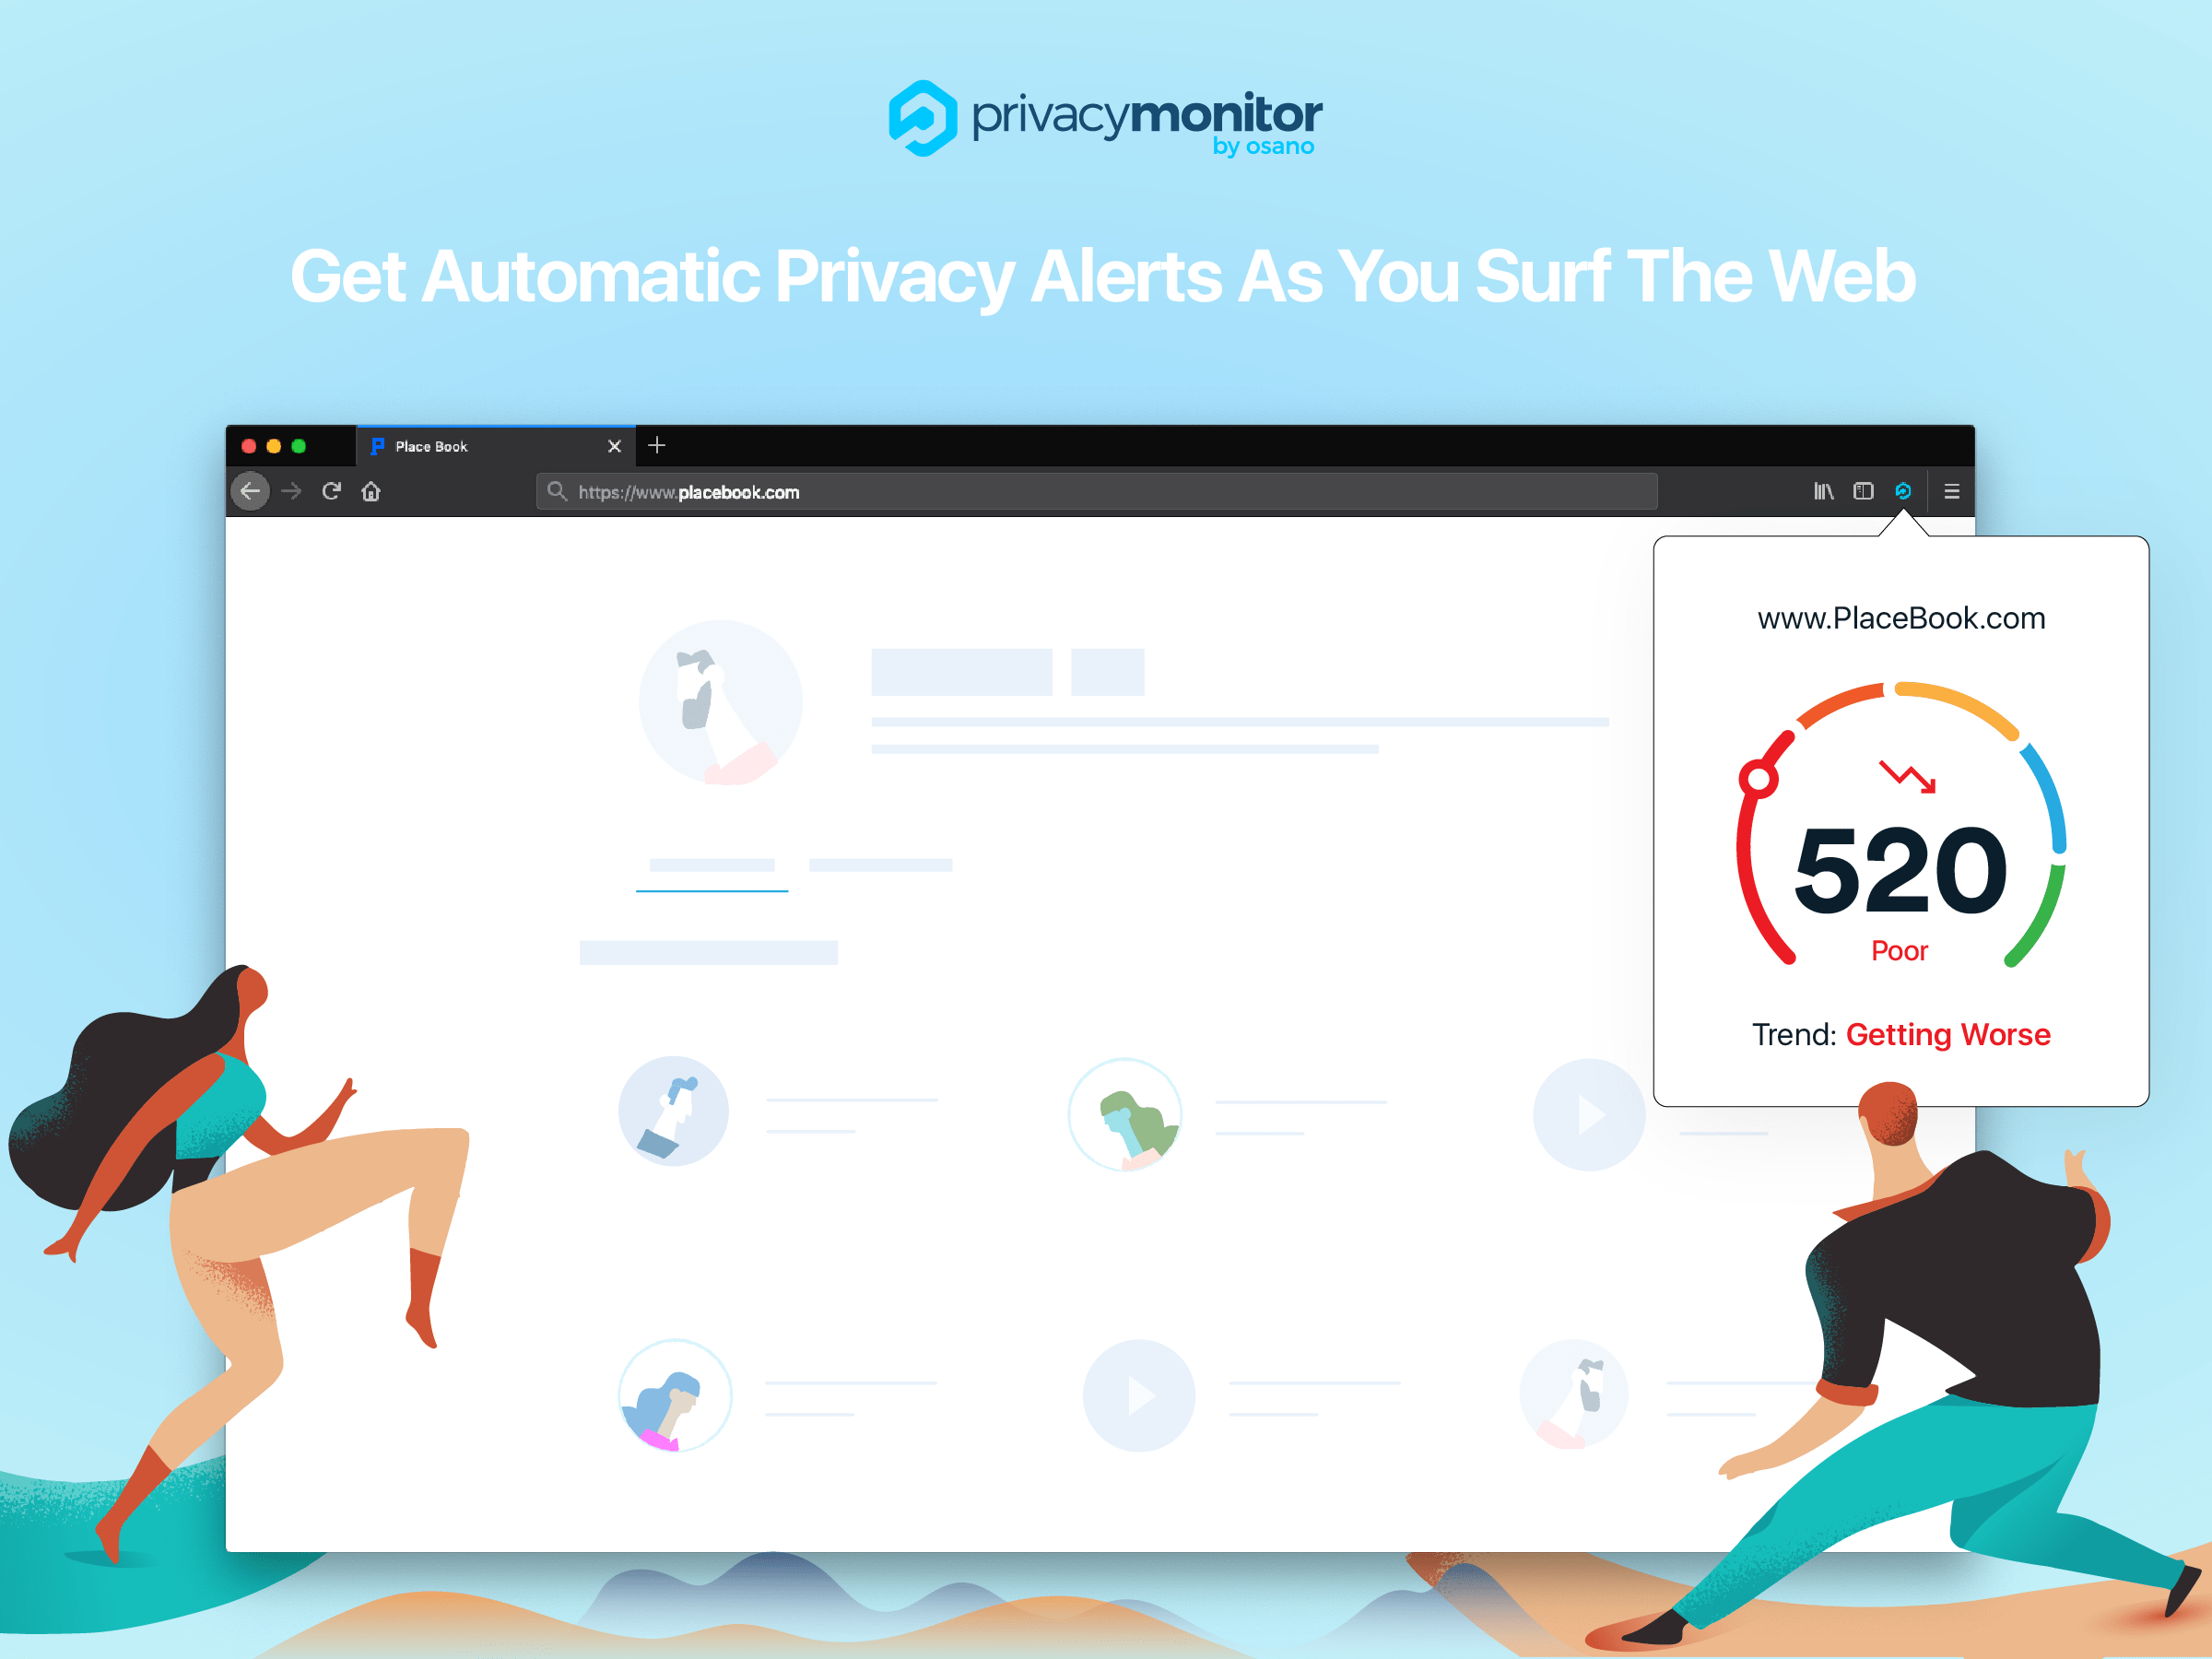 Privacy Monitor